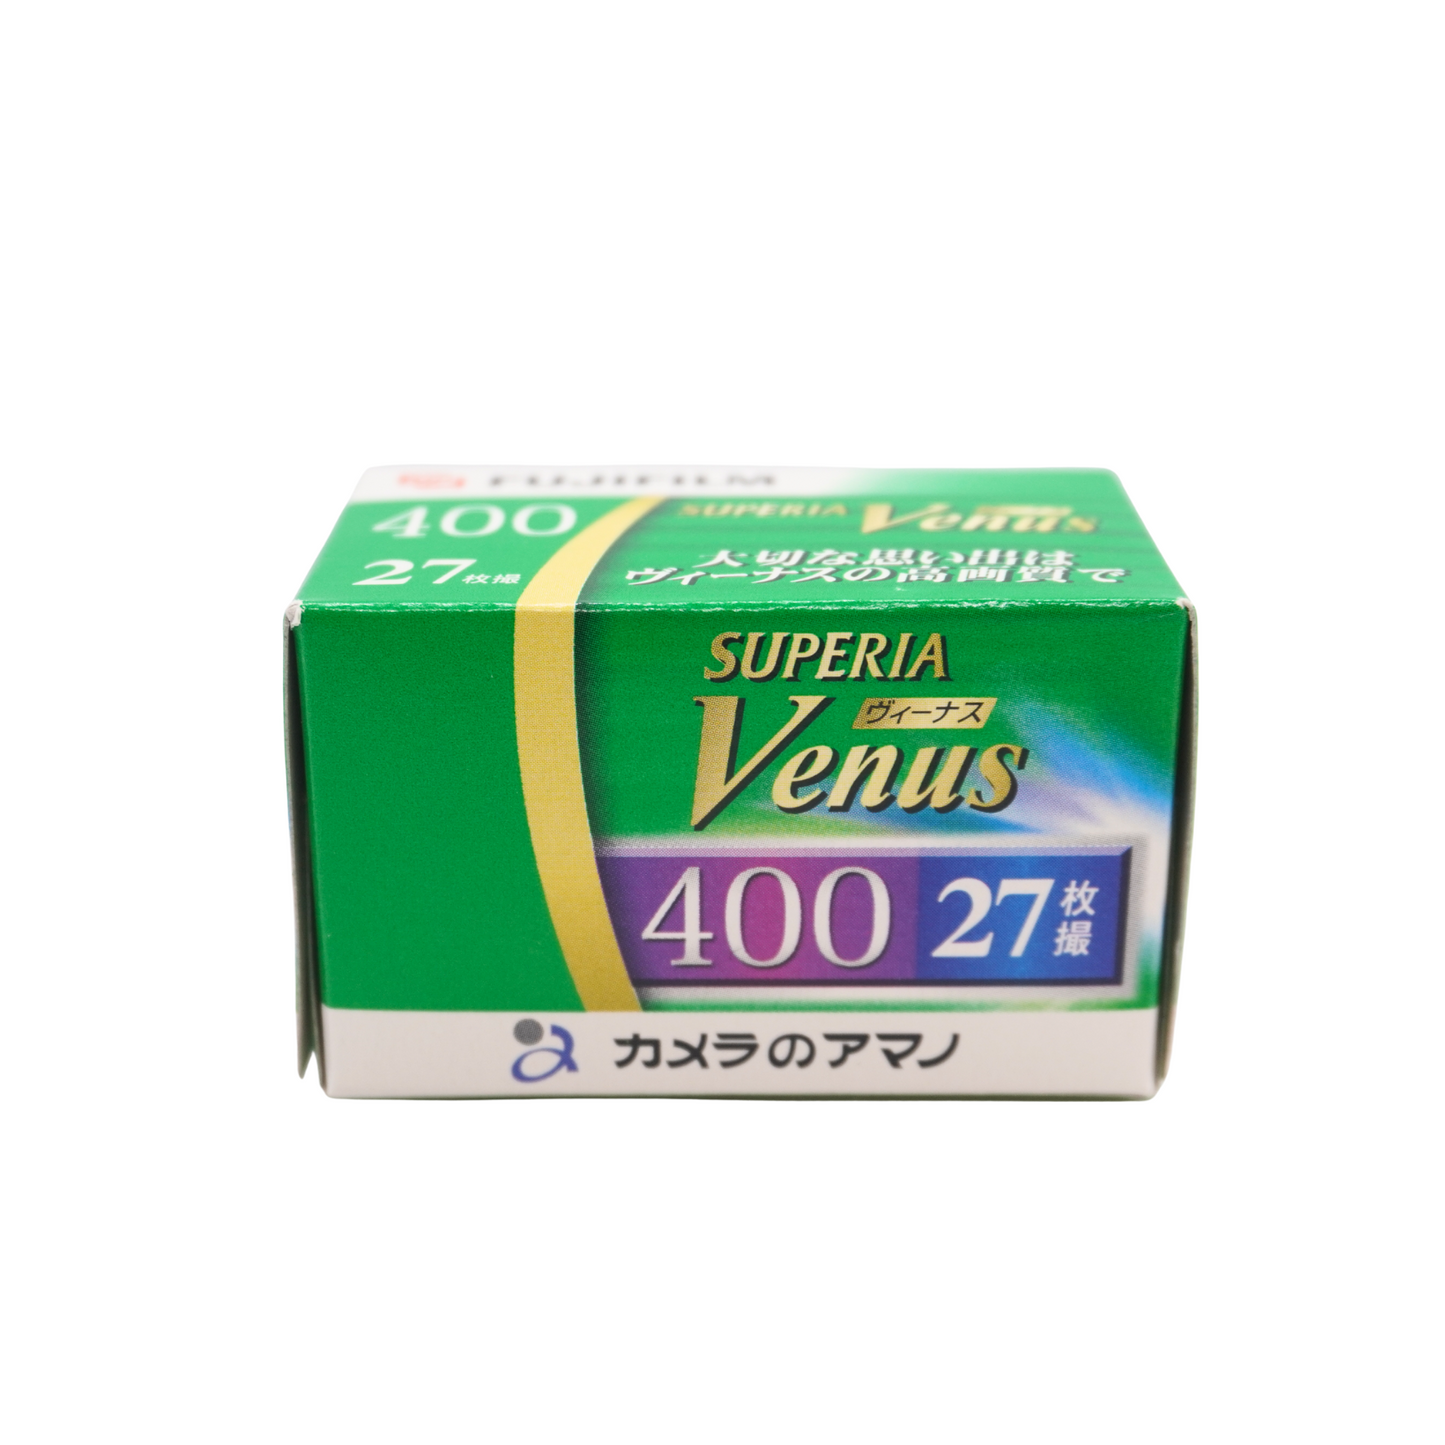 Fujifilm Superia Venus 400 27exp Expired Film (2006/07)